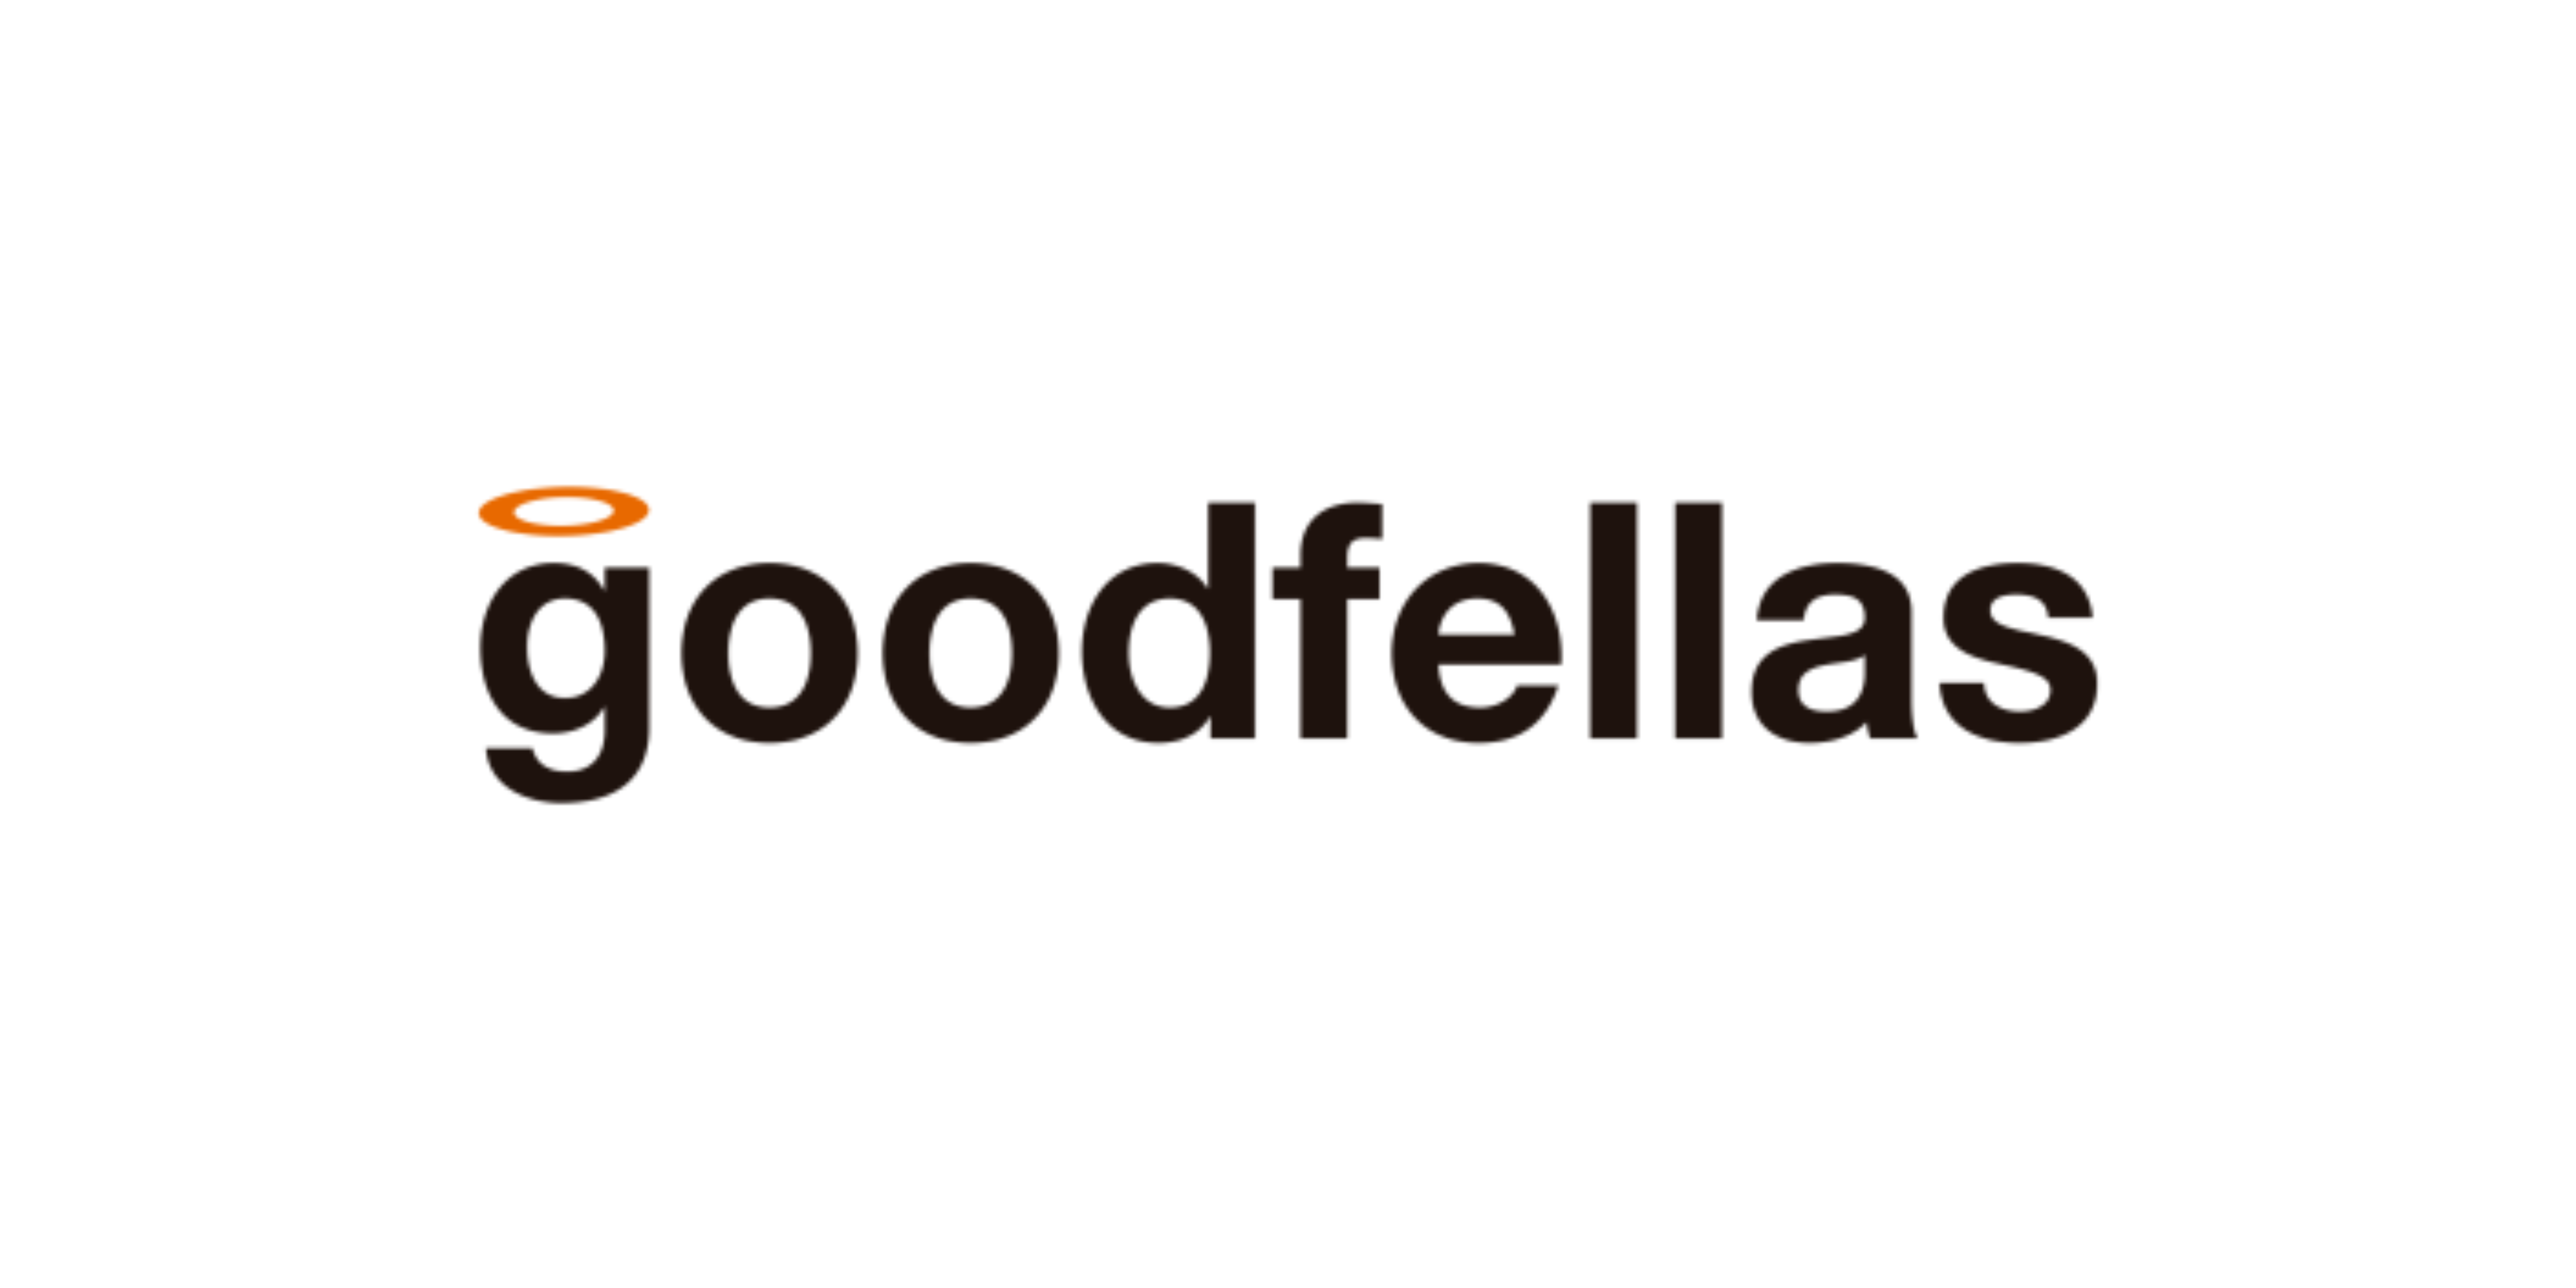 Los Goodfellas: Agencia efectiva del año según completa medición en festivales